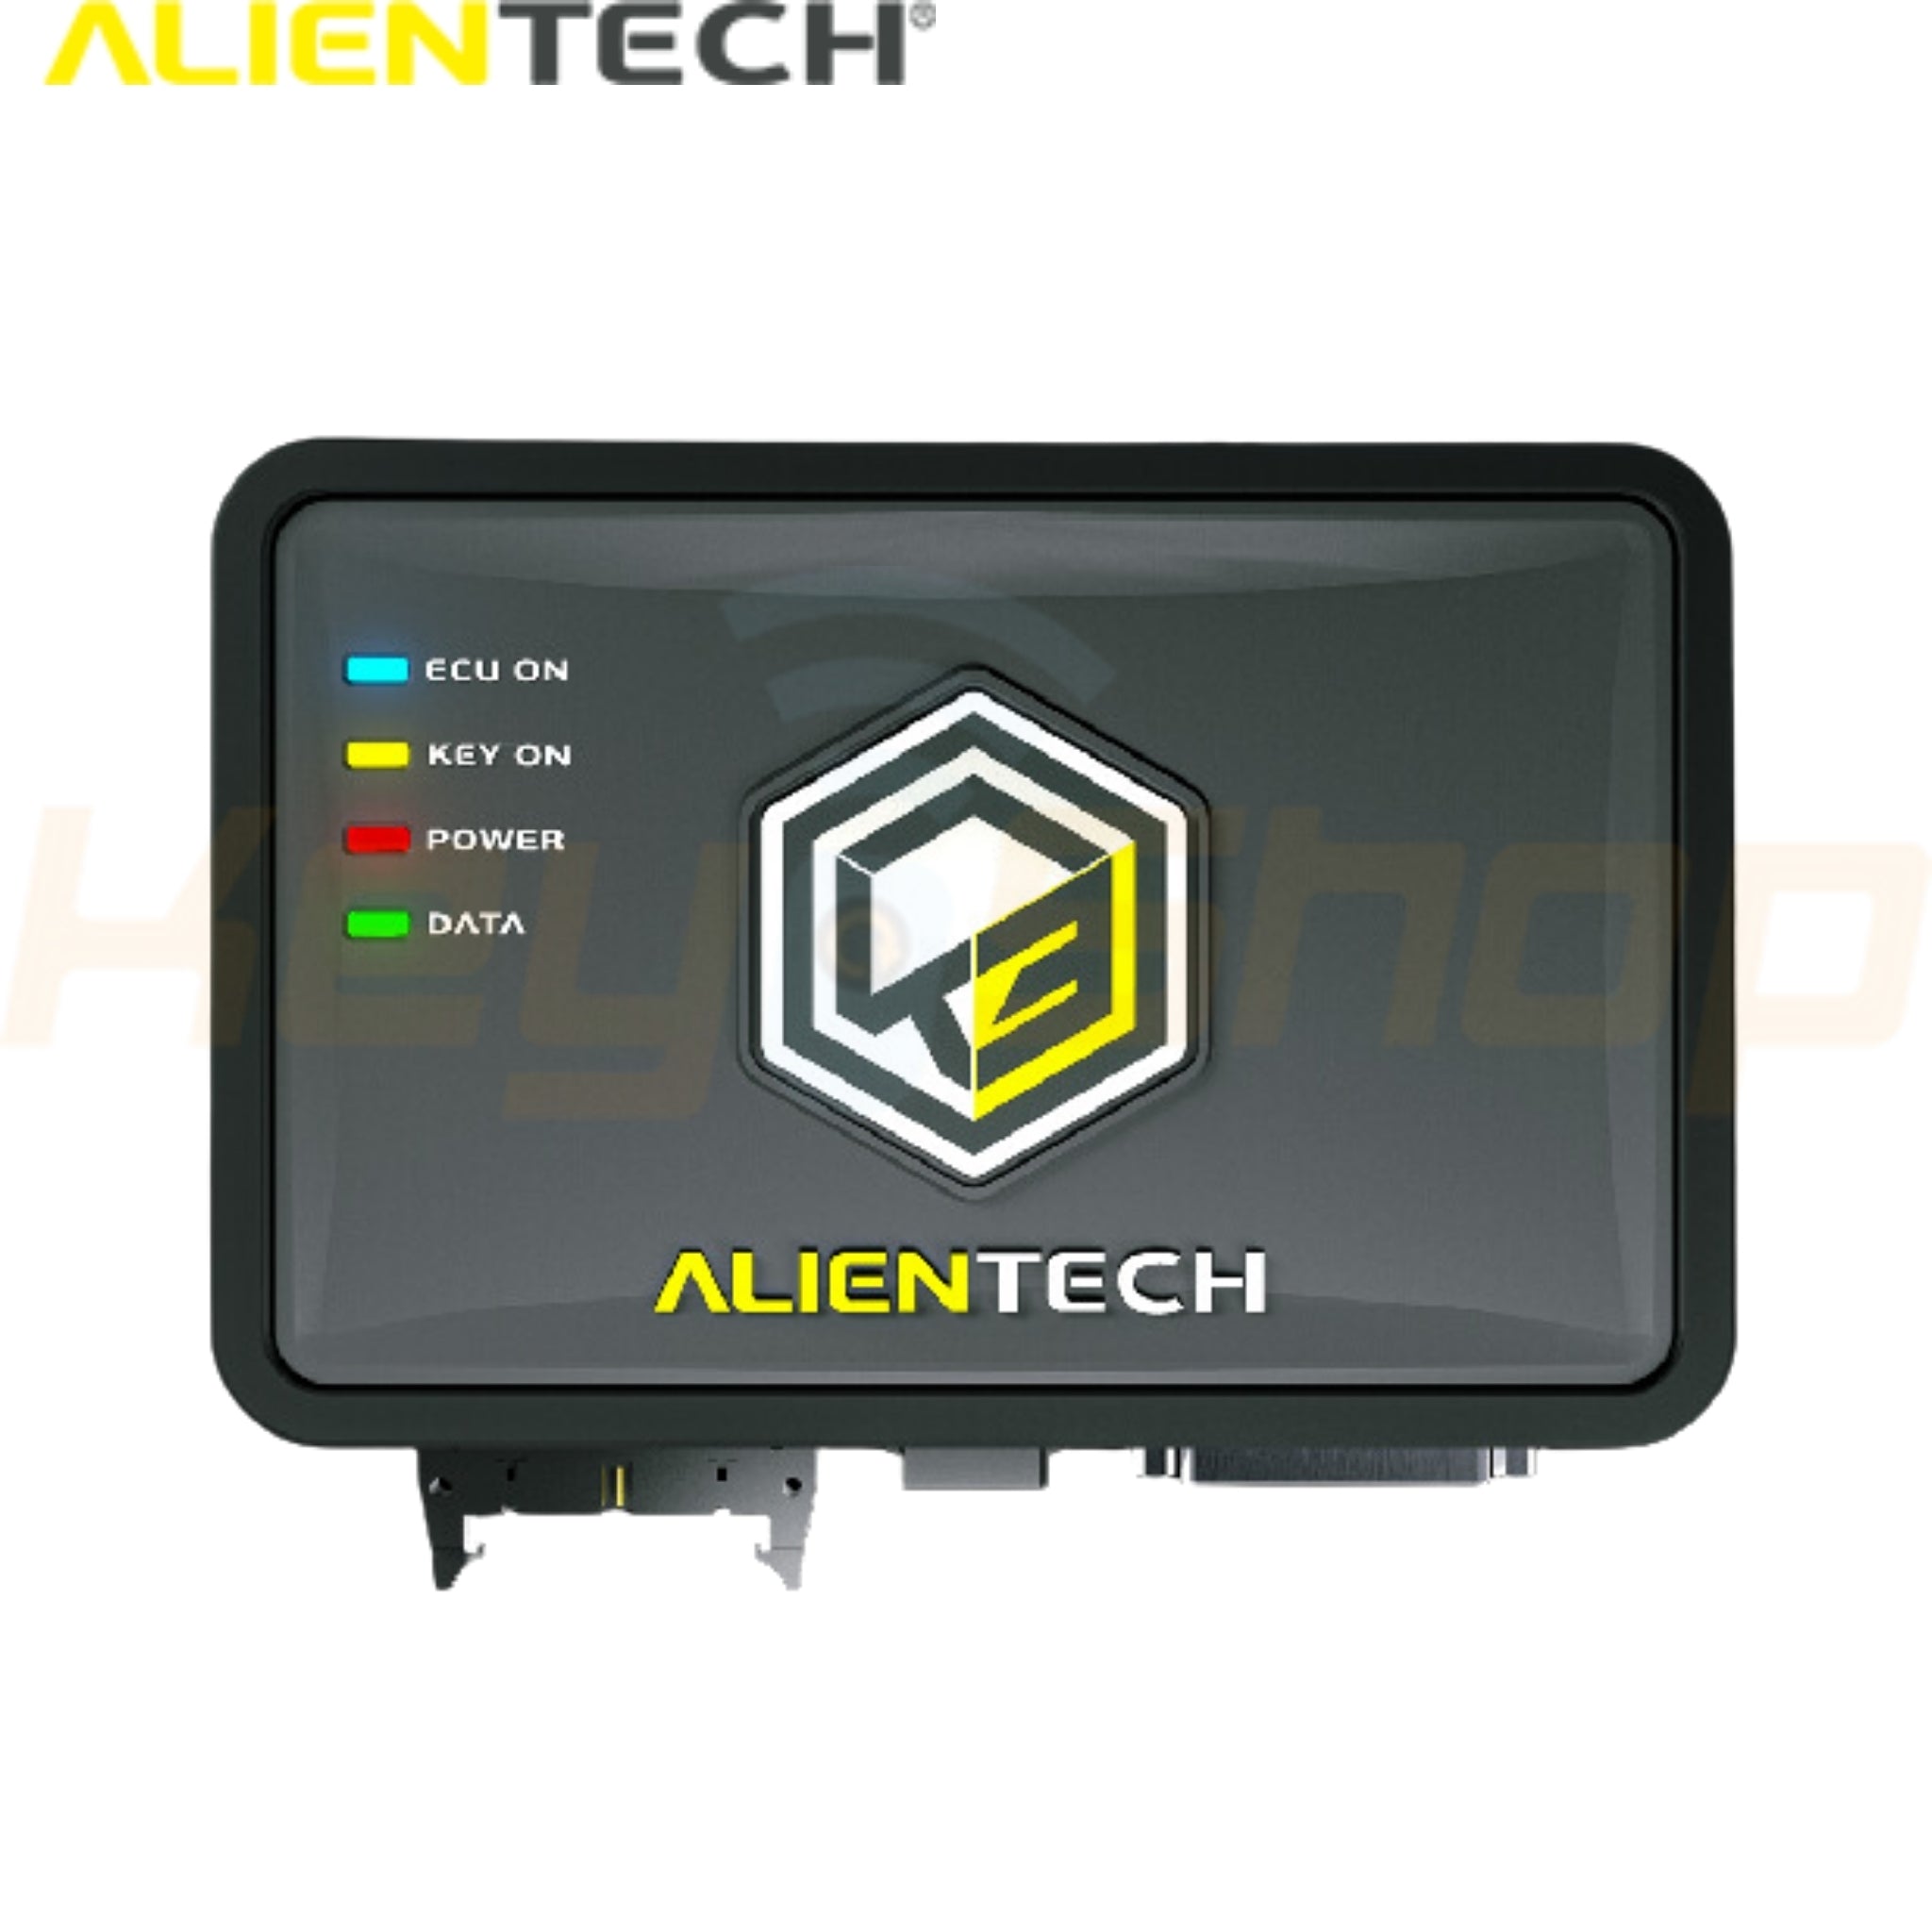 ALIENTECH KESS3 - ECU and TCU Programmer